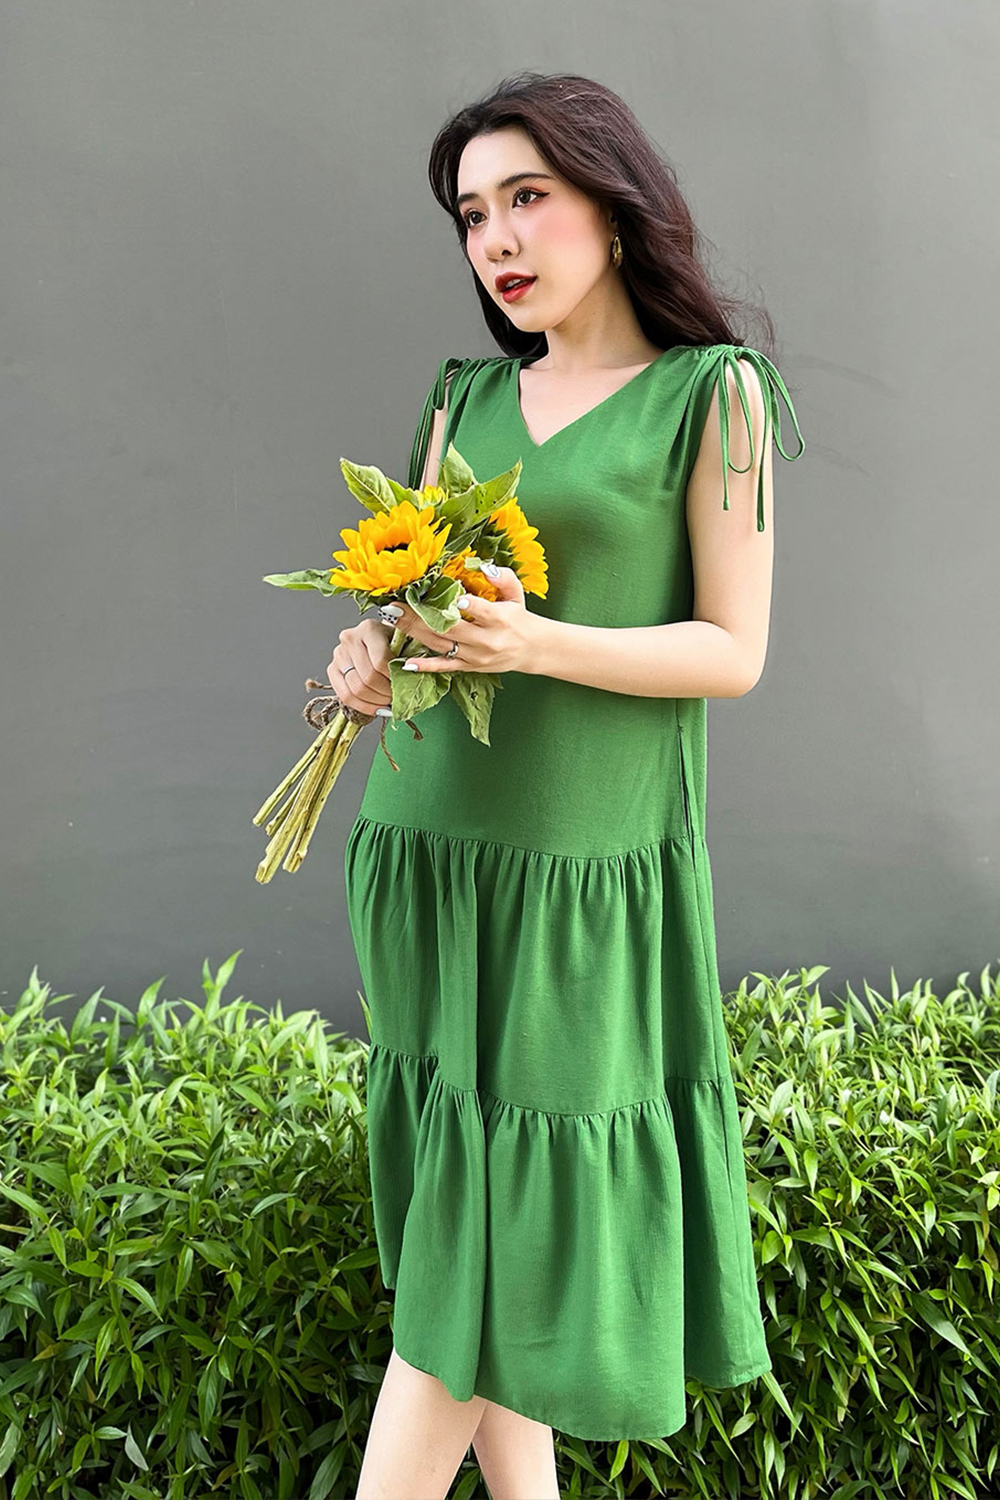 Đầm suông cổ tim sát nách phối nơ HL19-28 | Thời trang công sở K&K Fashion